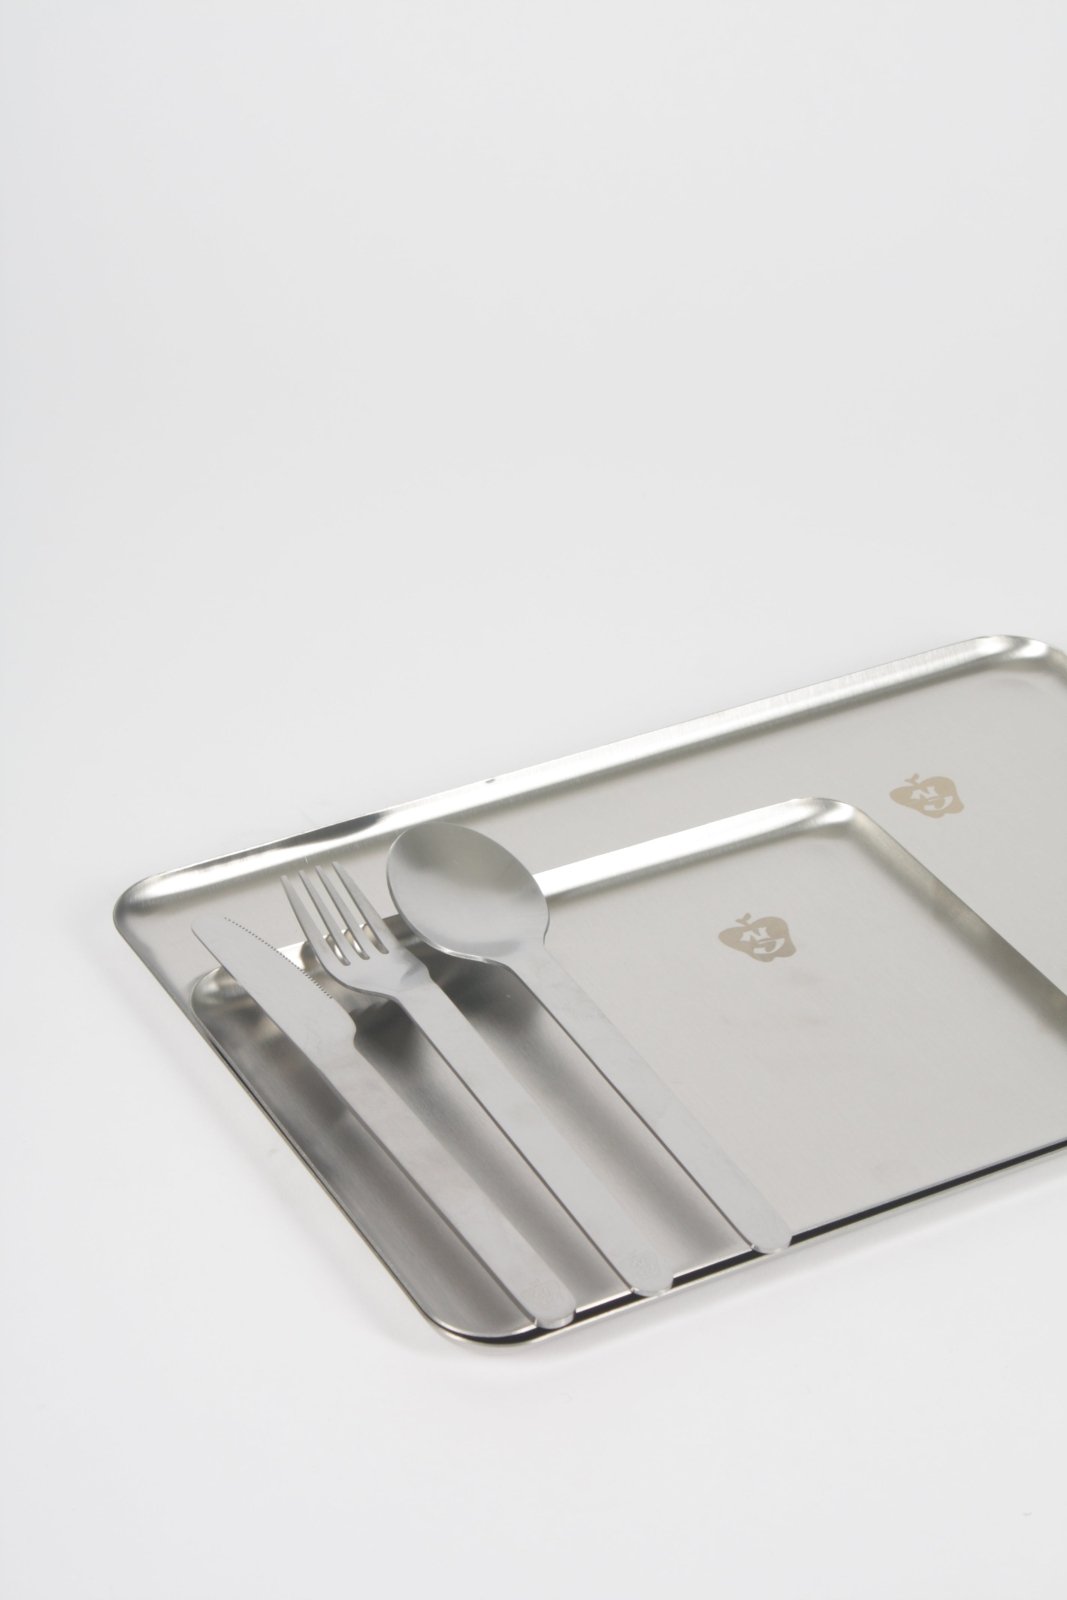 Steel Plate - Stainless steel serving tray set tableware by NIKO JUNE